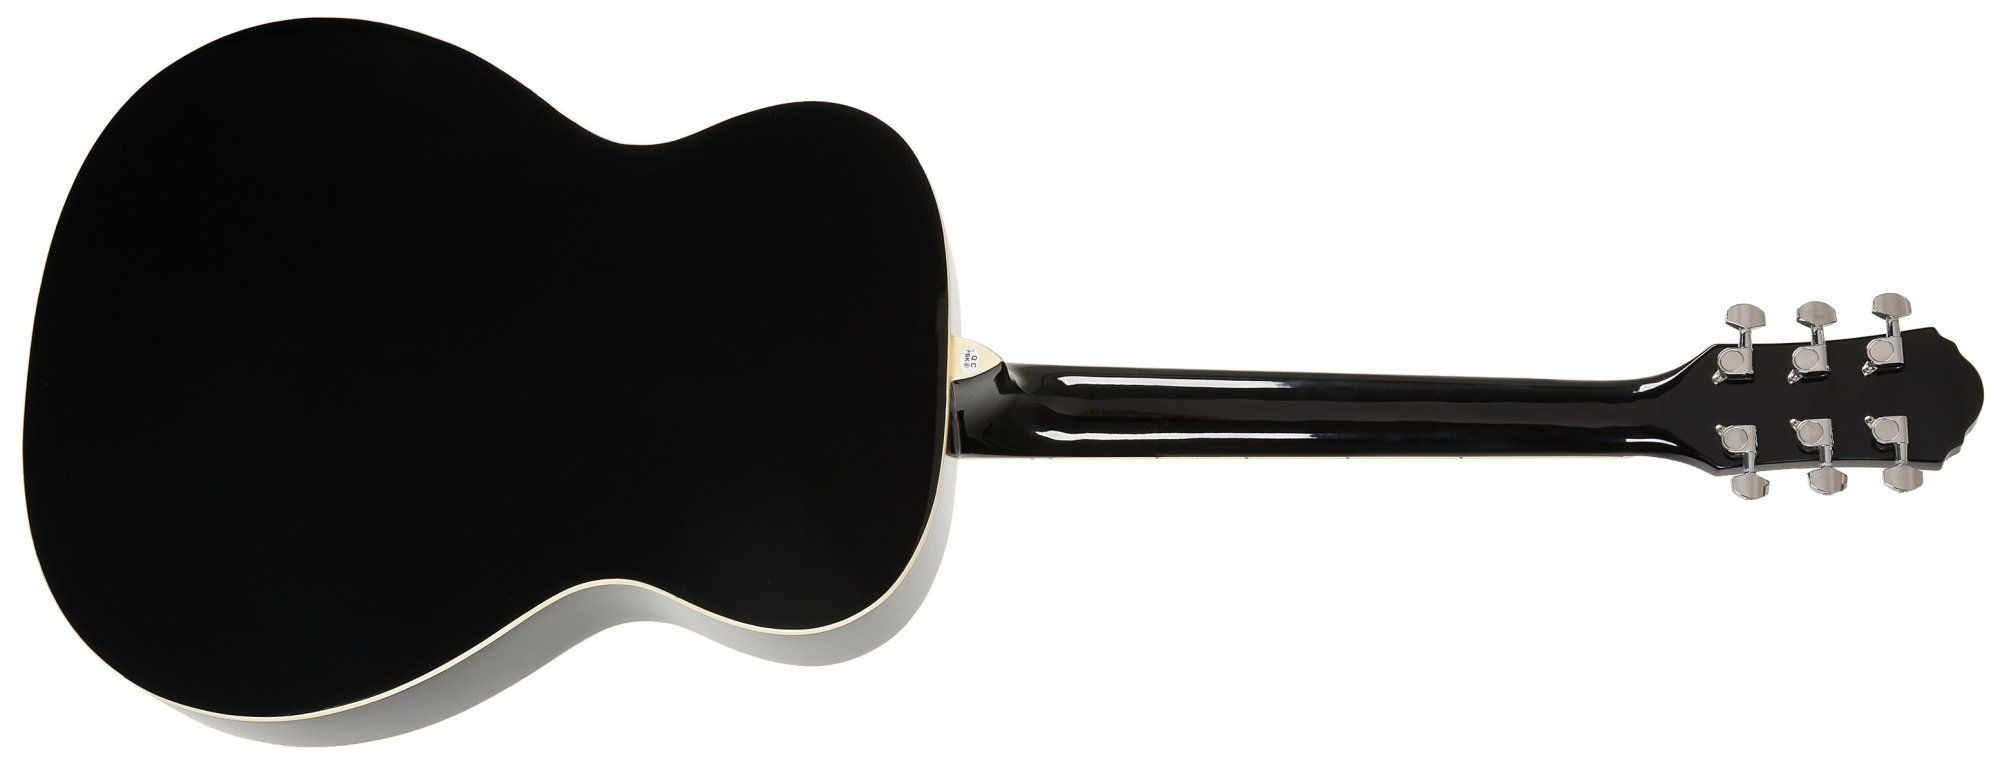  gyönyörű akusztikus gitár oscar schmidt 650 mm skála laminált test fényes kivitelben alkalmas pengetővel és ujjakkal való játékra 